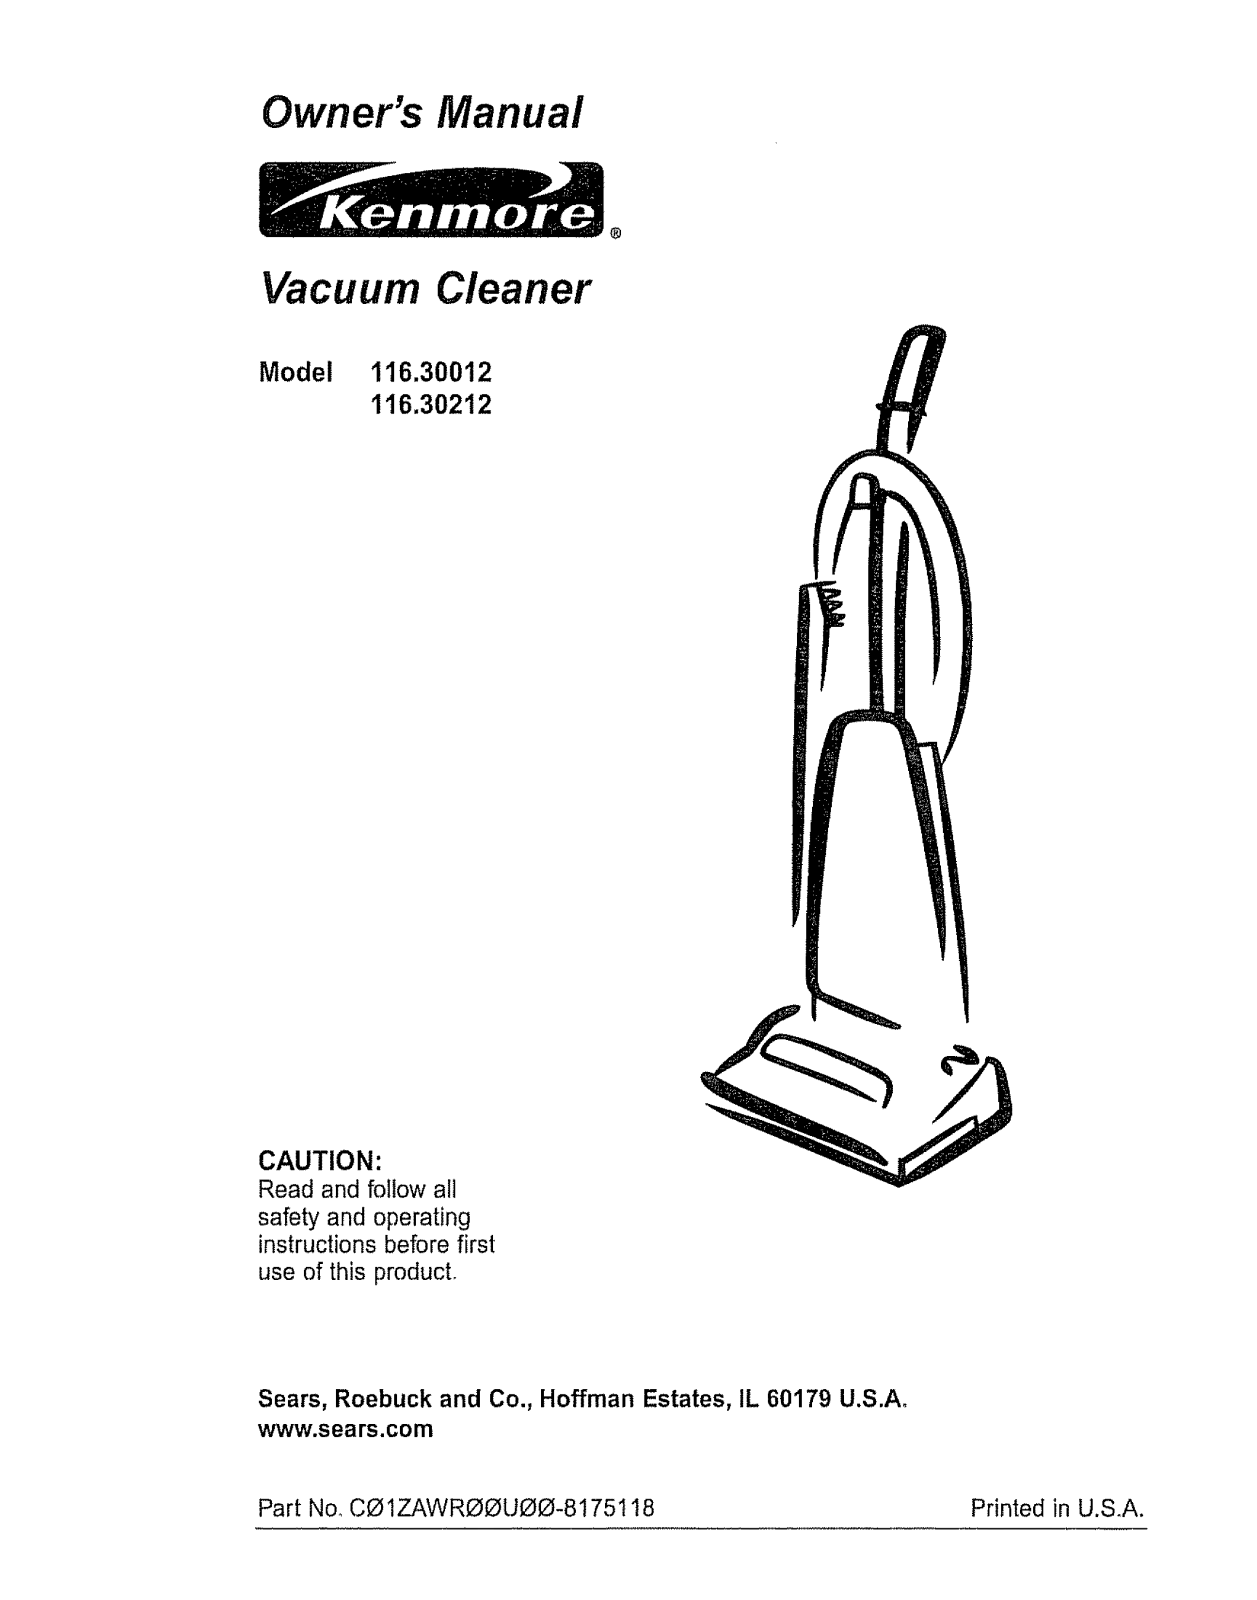 Kenmore 11630212000, 11630012000 Owner’s Manual